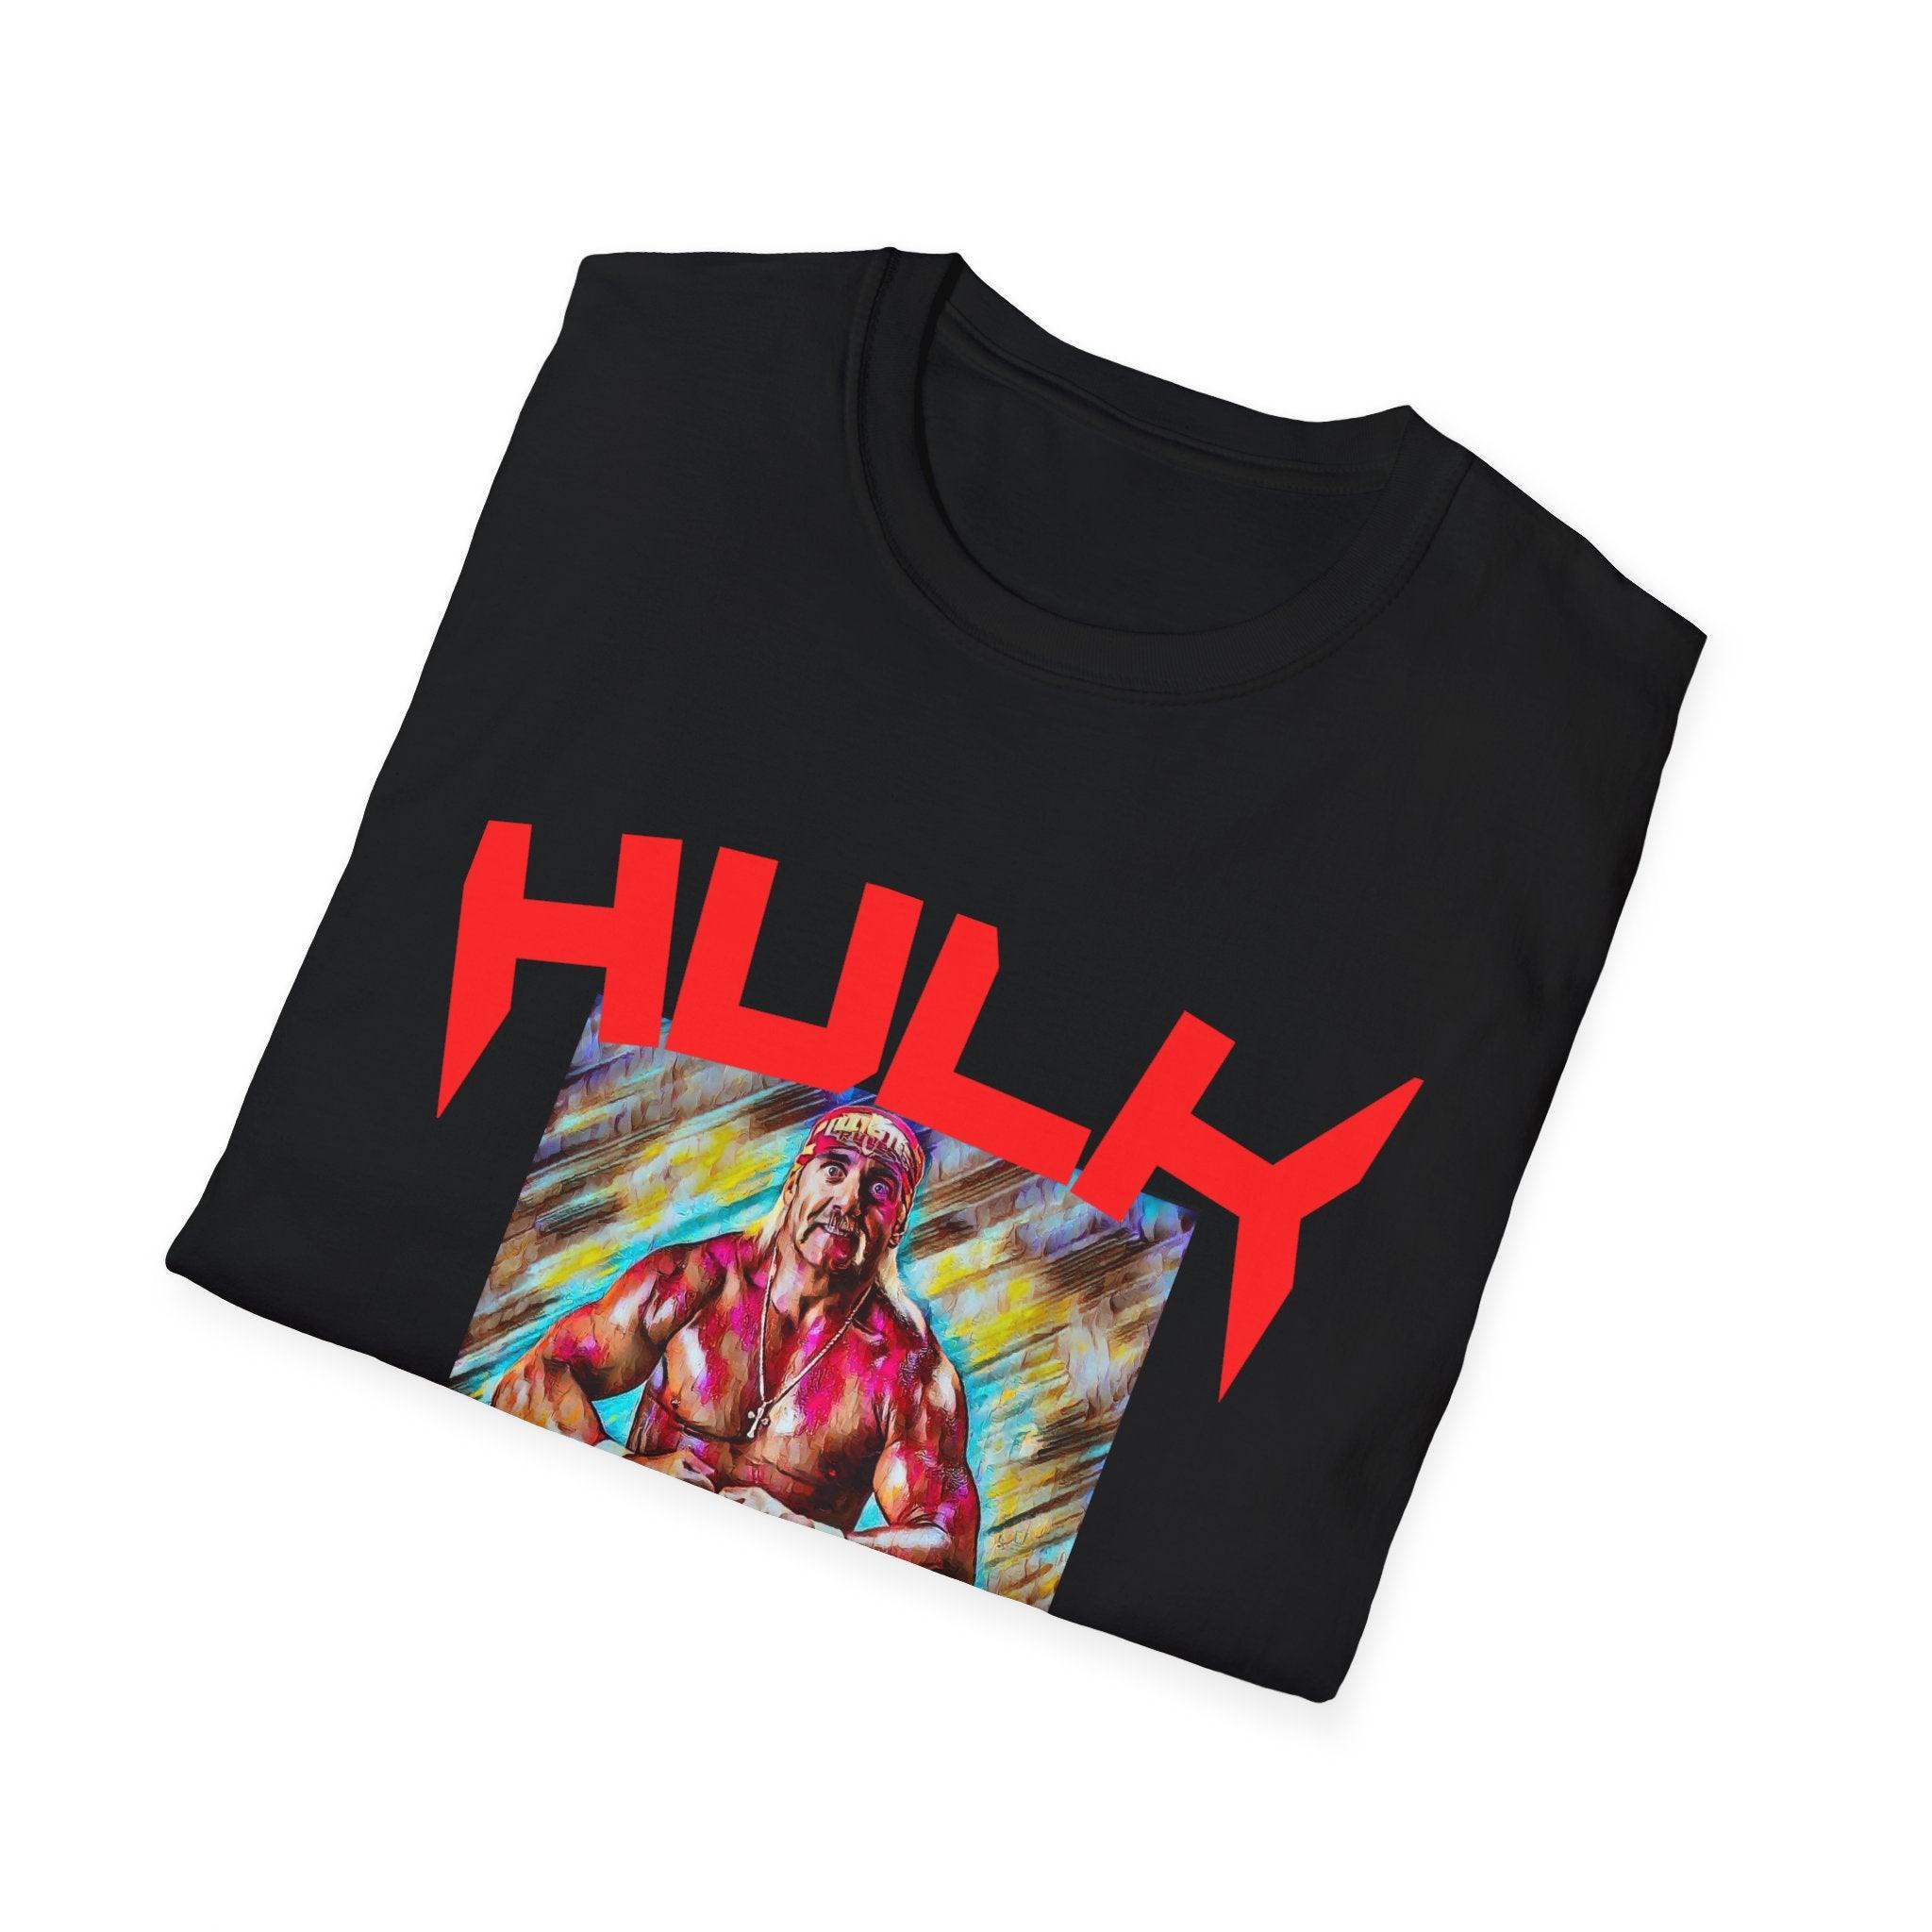 Hulk Hogan T-Shirt - Epic Shirts 403